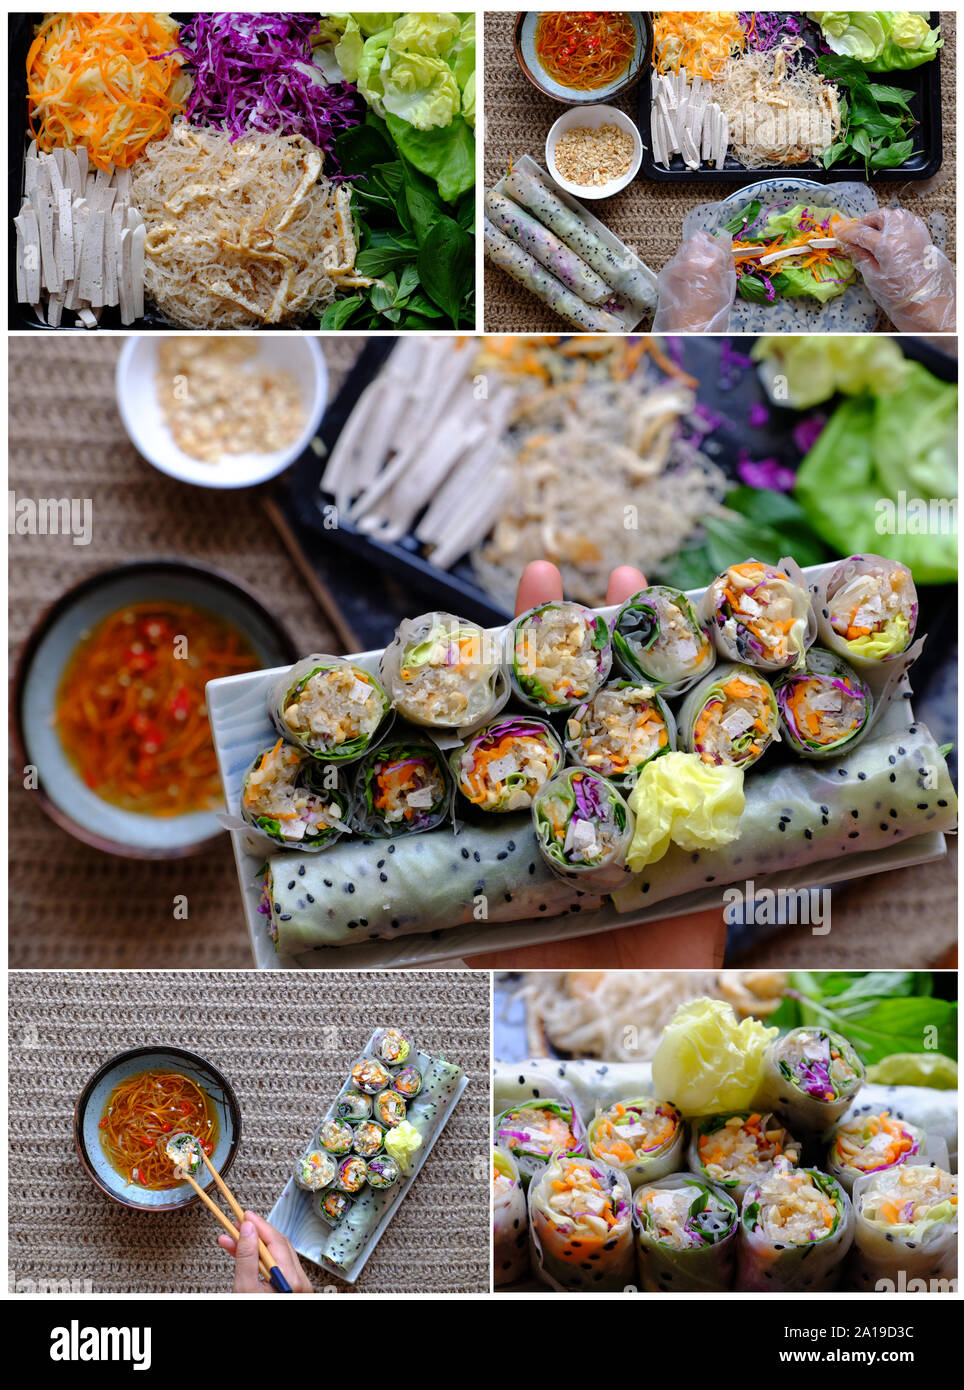 La transformation alimentaire riz végétarien rouleaux de papier à partir de légumes colorés comme les carottes, le chou, le tofu, les vermicelles, salade, arachide, rouleaux de printemps vietnamiens pour h Banque D'Images